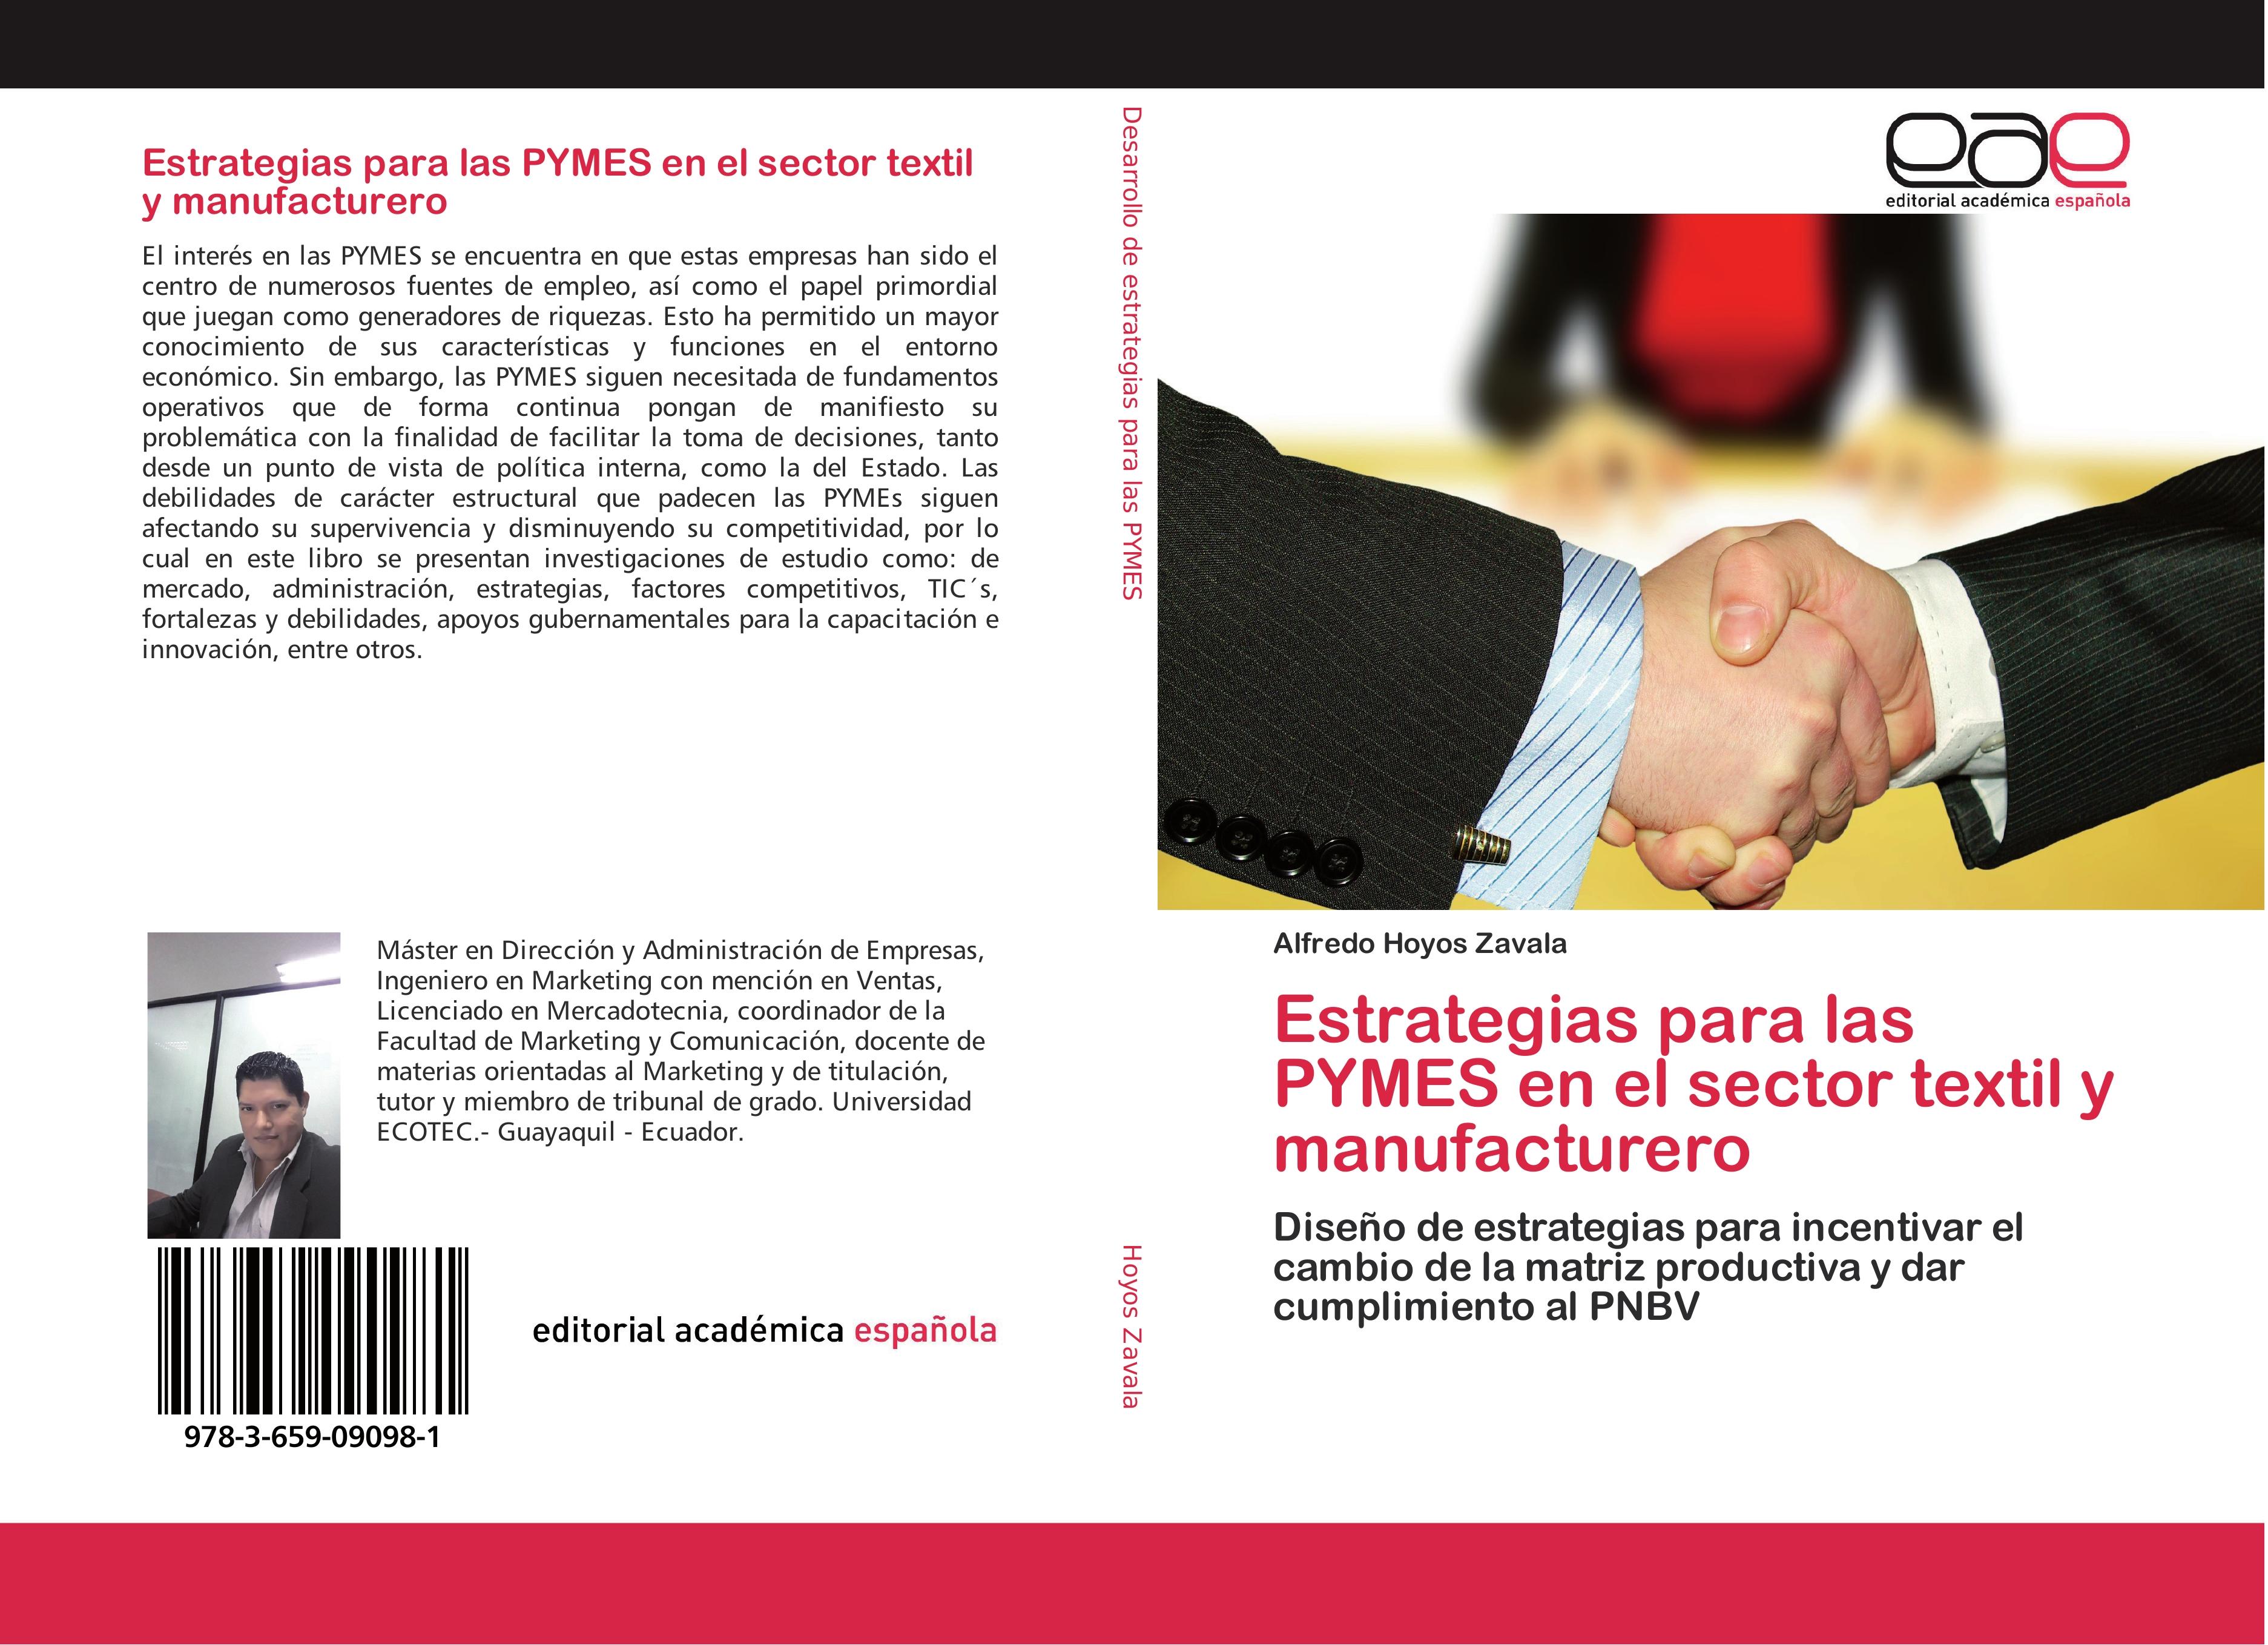 Estrategias para las PYMES en el sector textil y manufacturero - Hoyos Zavala, Alfredo